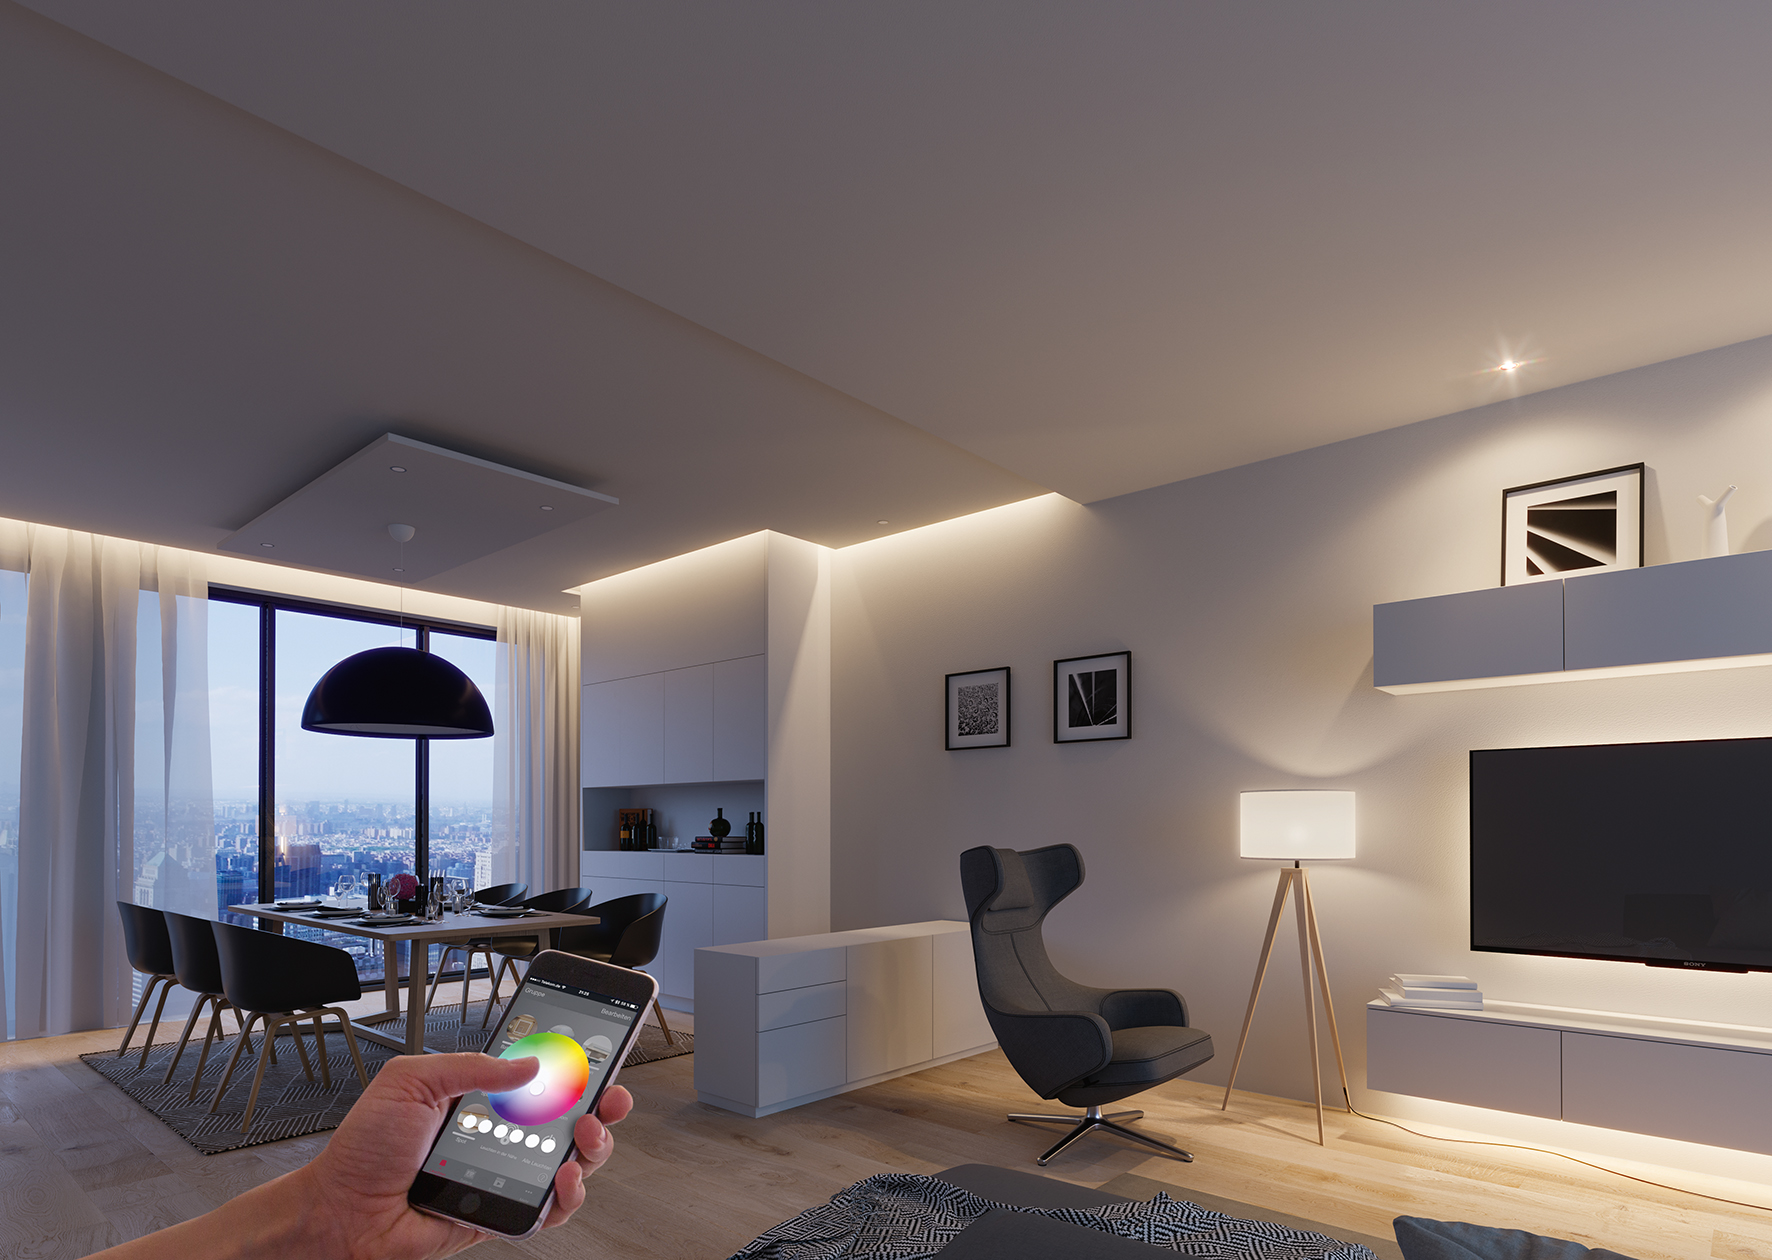 Häfele Connect, eine selbst entwickelte App für Smartphones und Tablets, vernetzt und steuert Licht und Sound sowie elektrische Antriebe im Möbel. Auch beim Thema Smart-Home ist Häfele als Vordenker dabei.